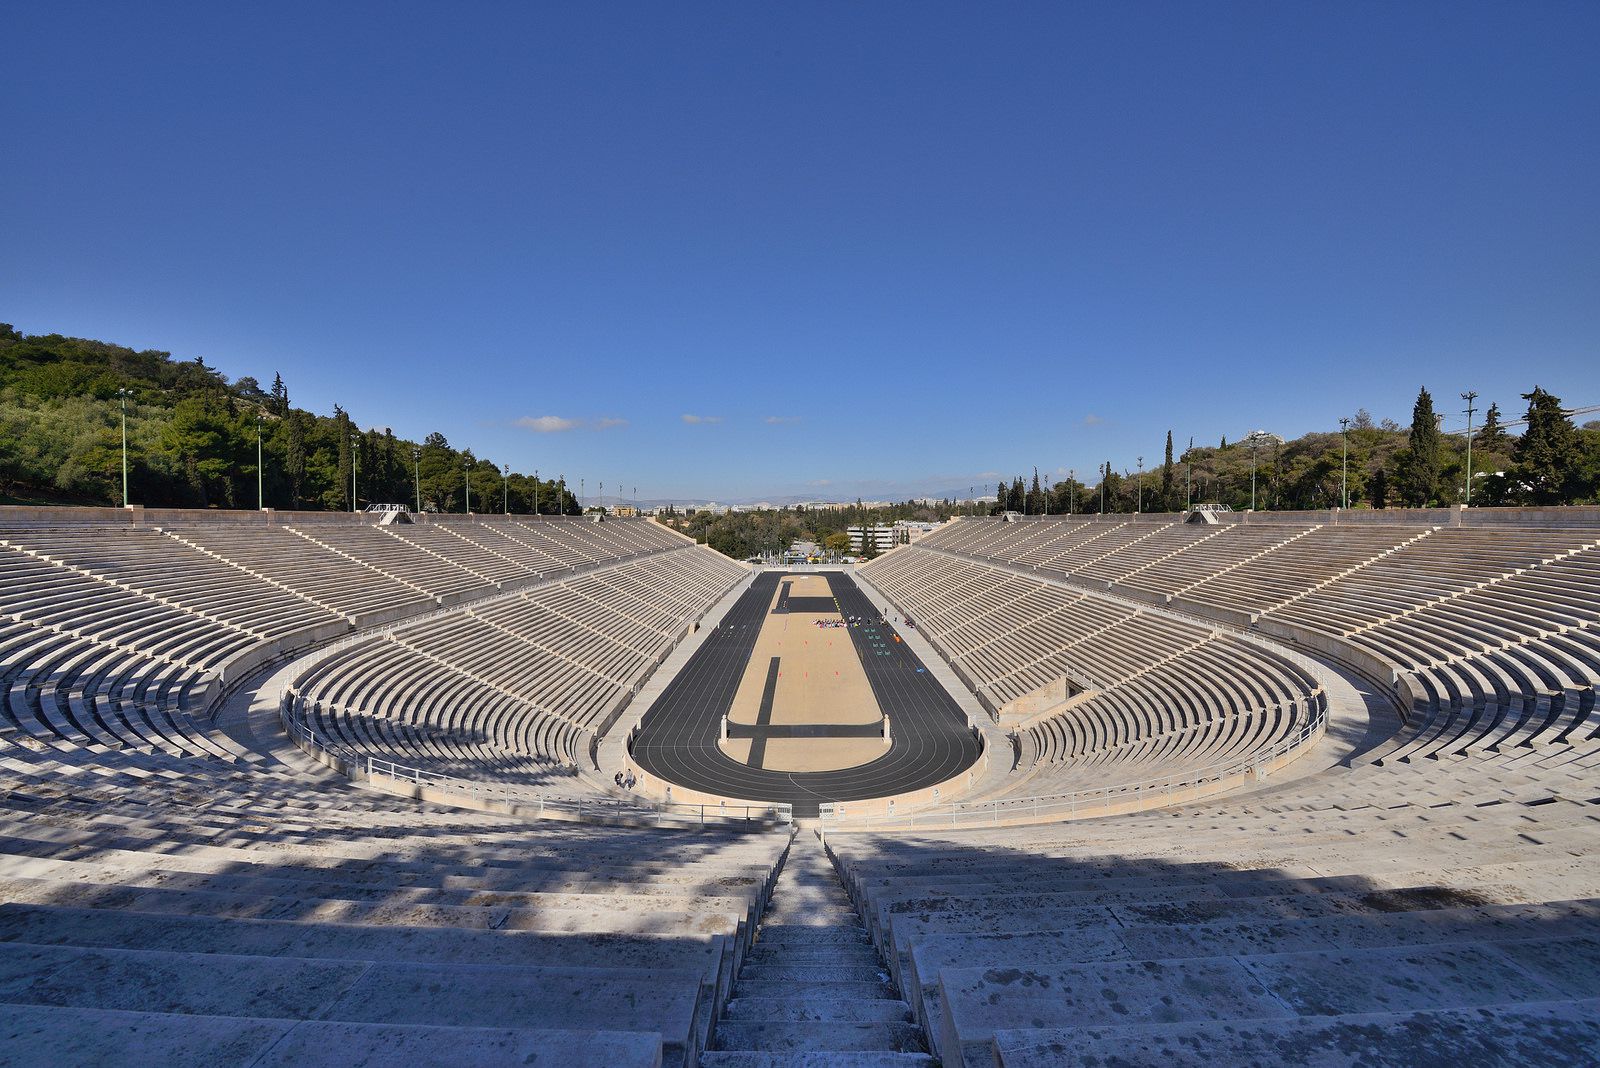 Первый олимпийский стадион. Греция стадион Панатинаикос. Греция Афины Олимпийский стадион. Панафинейский стадион в Афинах. Стадион Панатинаикос (г. Афины).